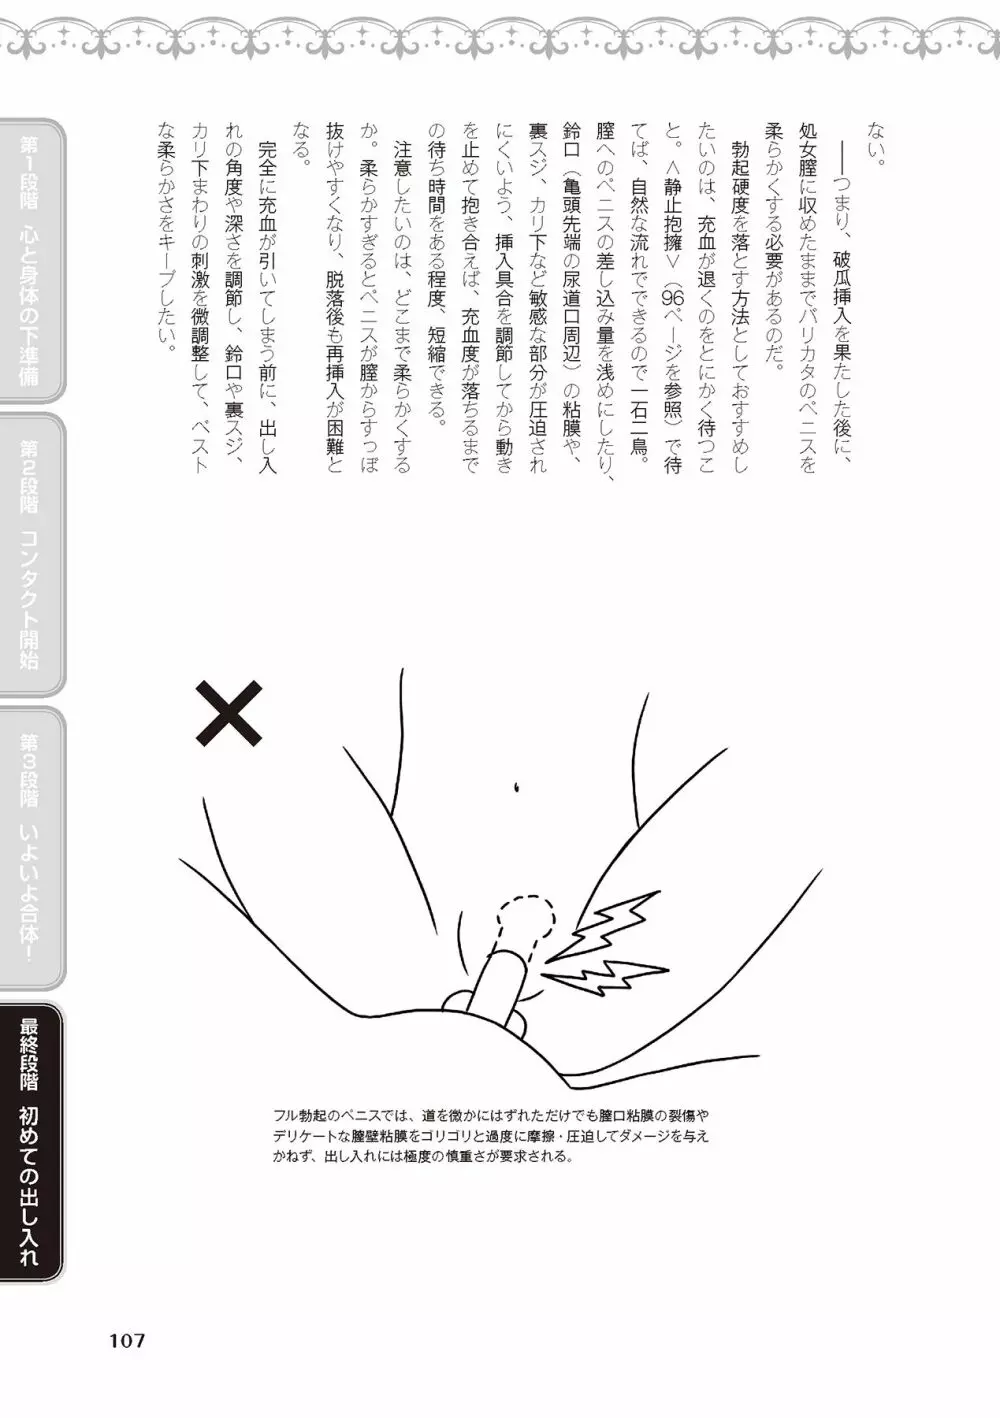 処女喪失・ロストヴァージンSEX完全マニュアル イラスト版……初エッチ 109ページ